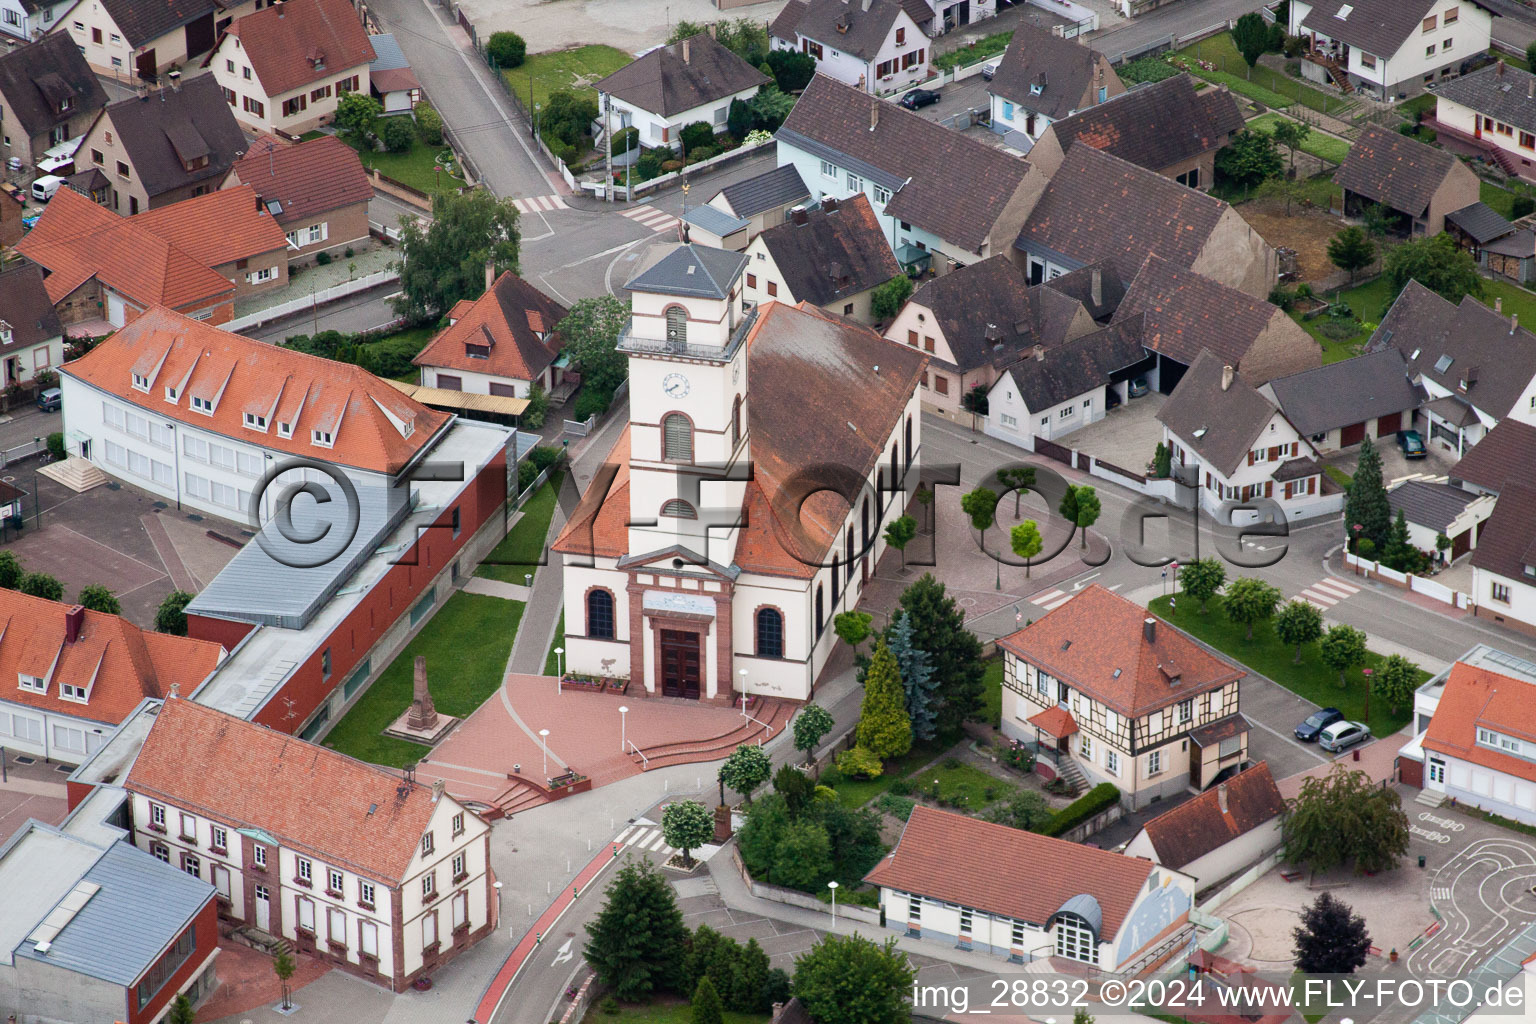 Vue aérienne de Église Paroisse Saint-Matthieu au centre du village à Drusenheim dans le département Bas Rhin, France